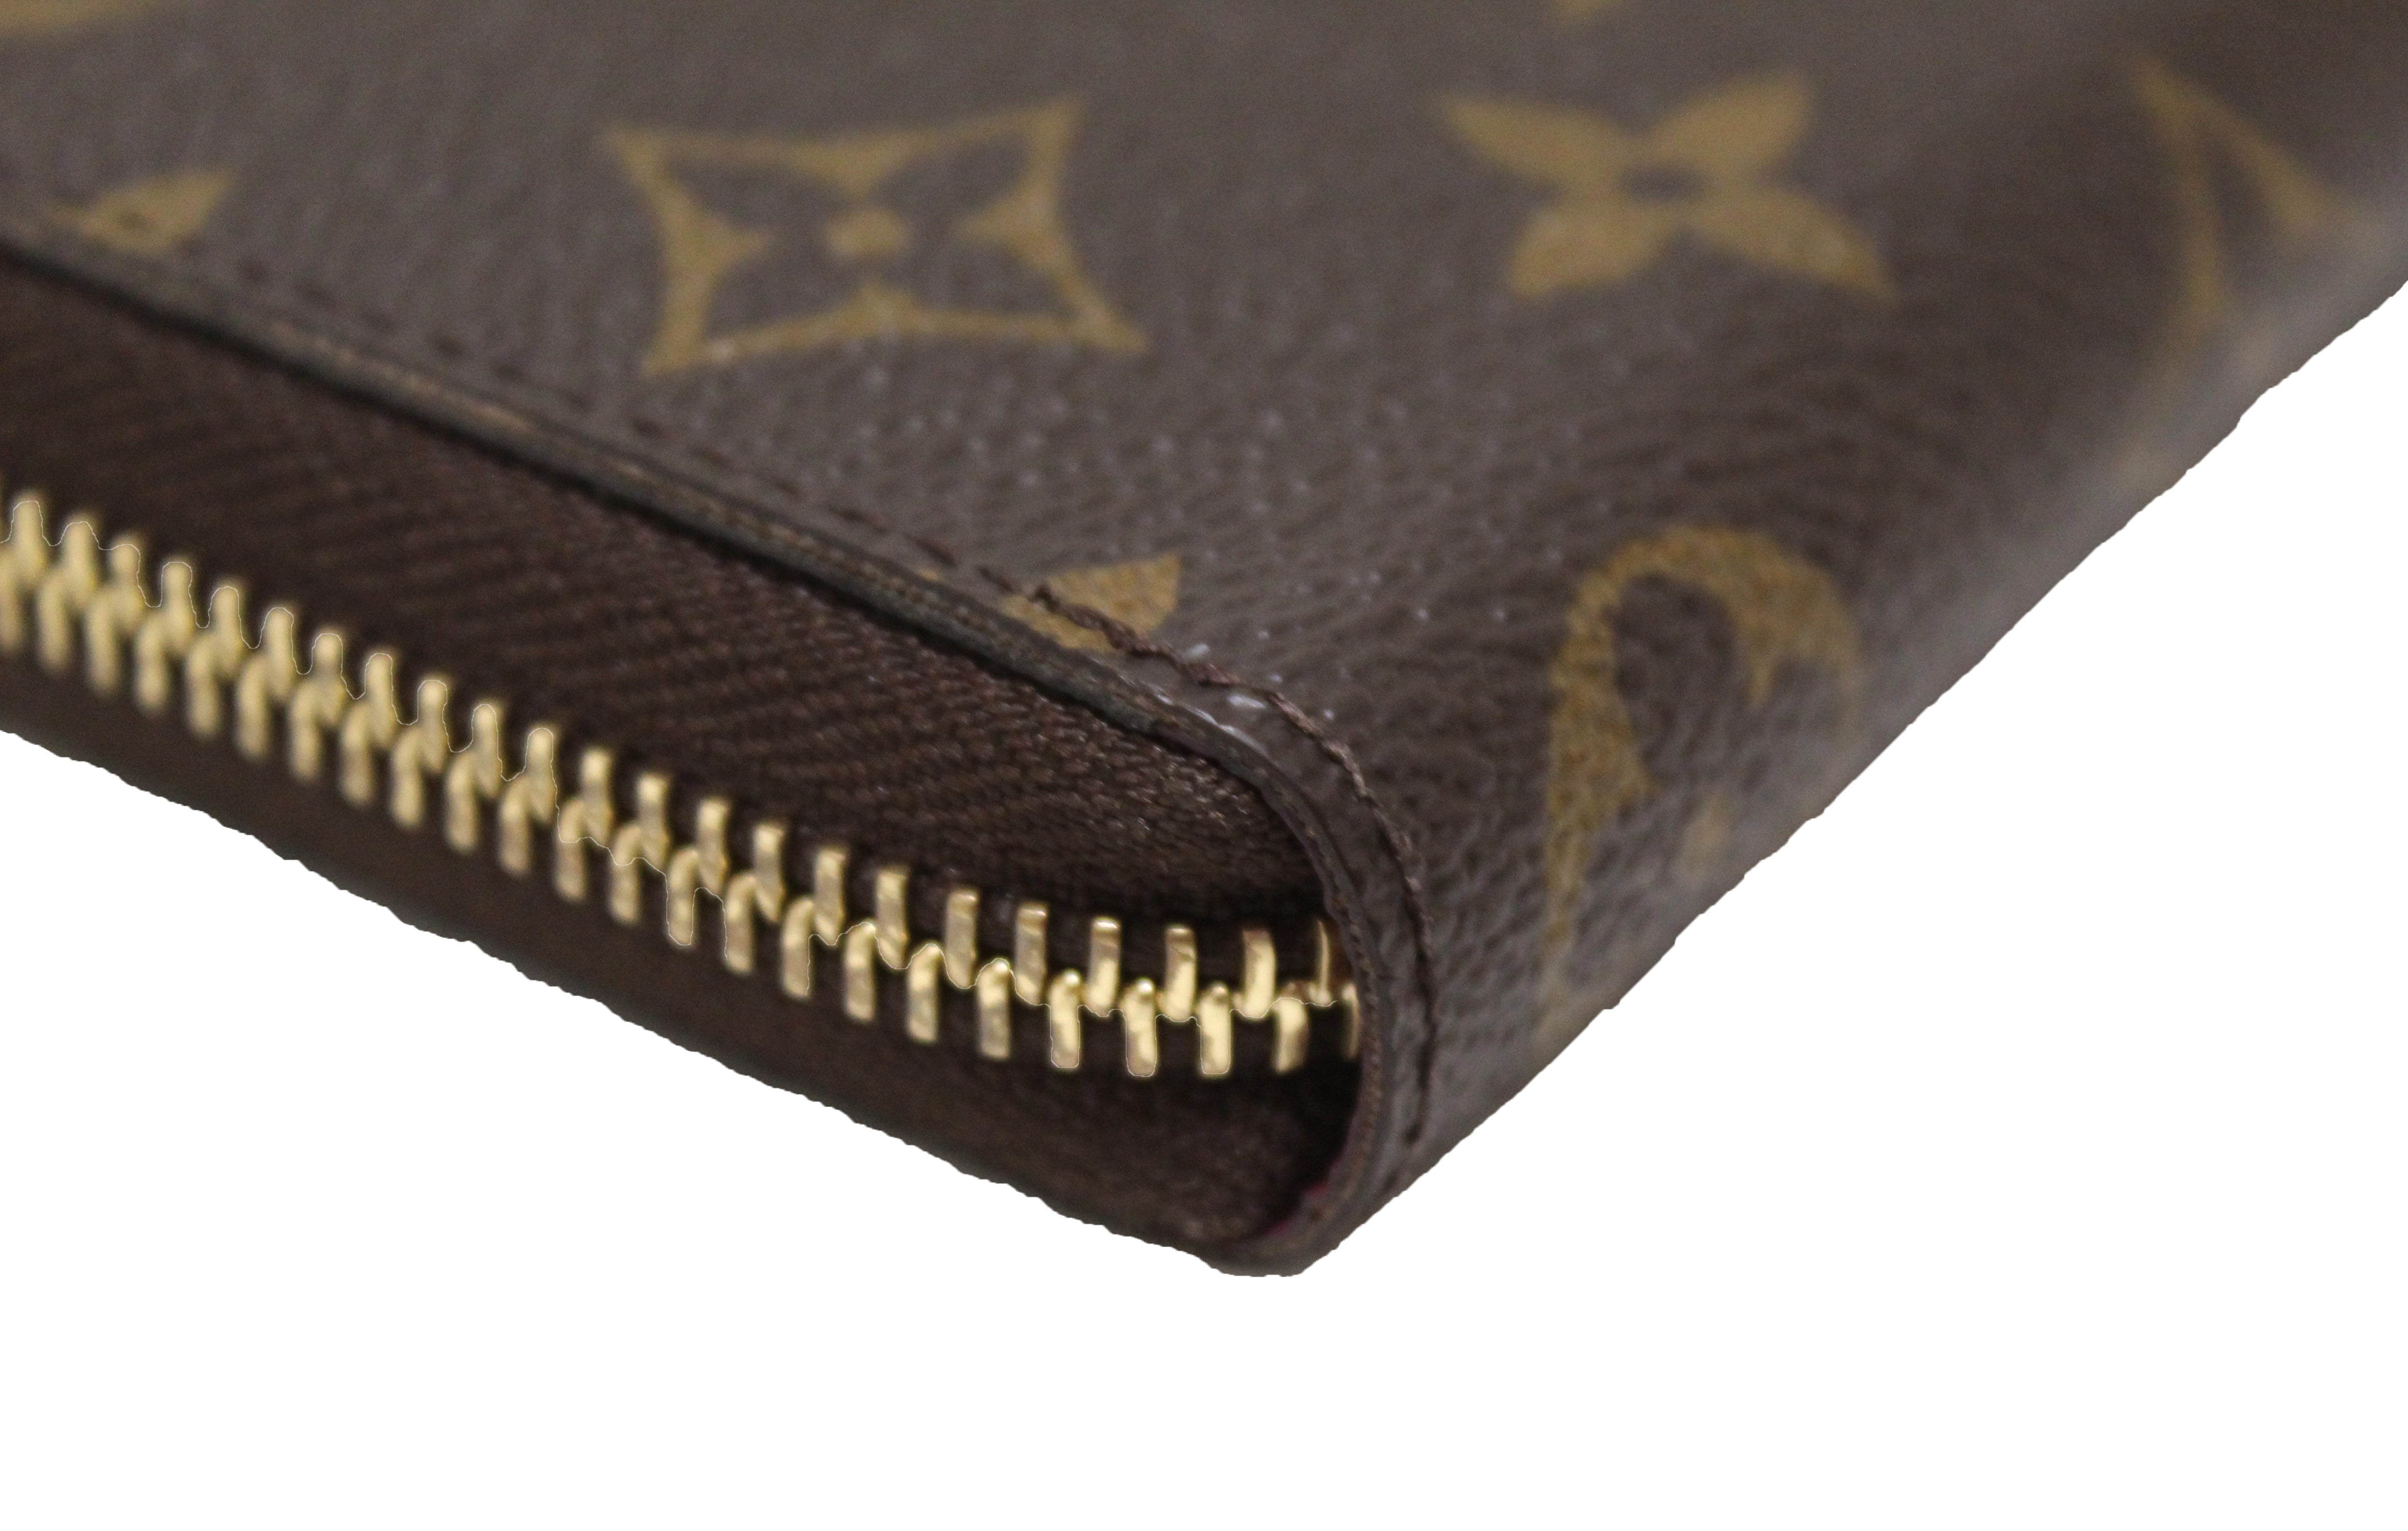 Authentic New Louis Vuitton Classic Monogram Fuchsia Clemence Wallet –  Paris Station Shop